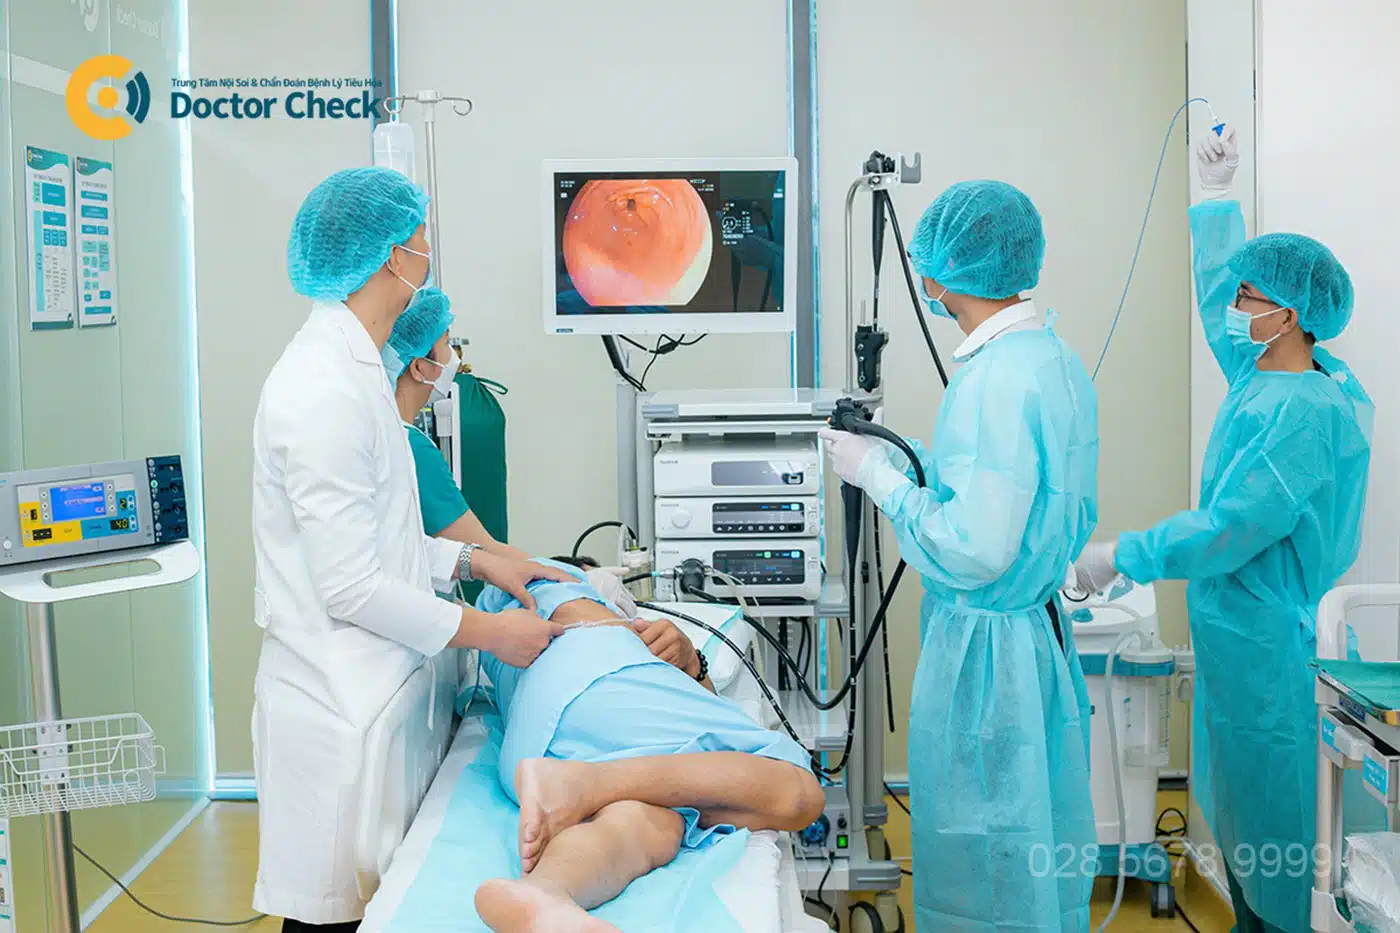 Endo Clinic trang bị thiết bị hiện đại, hỗ trợ tối đa bác sĩ chẩn đoán và điều trị bệnh